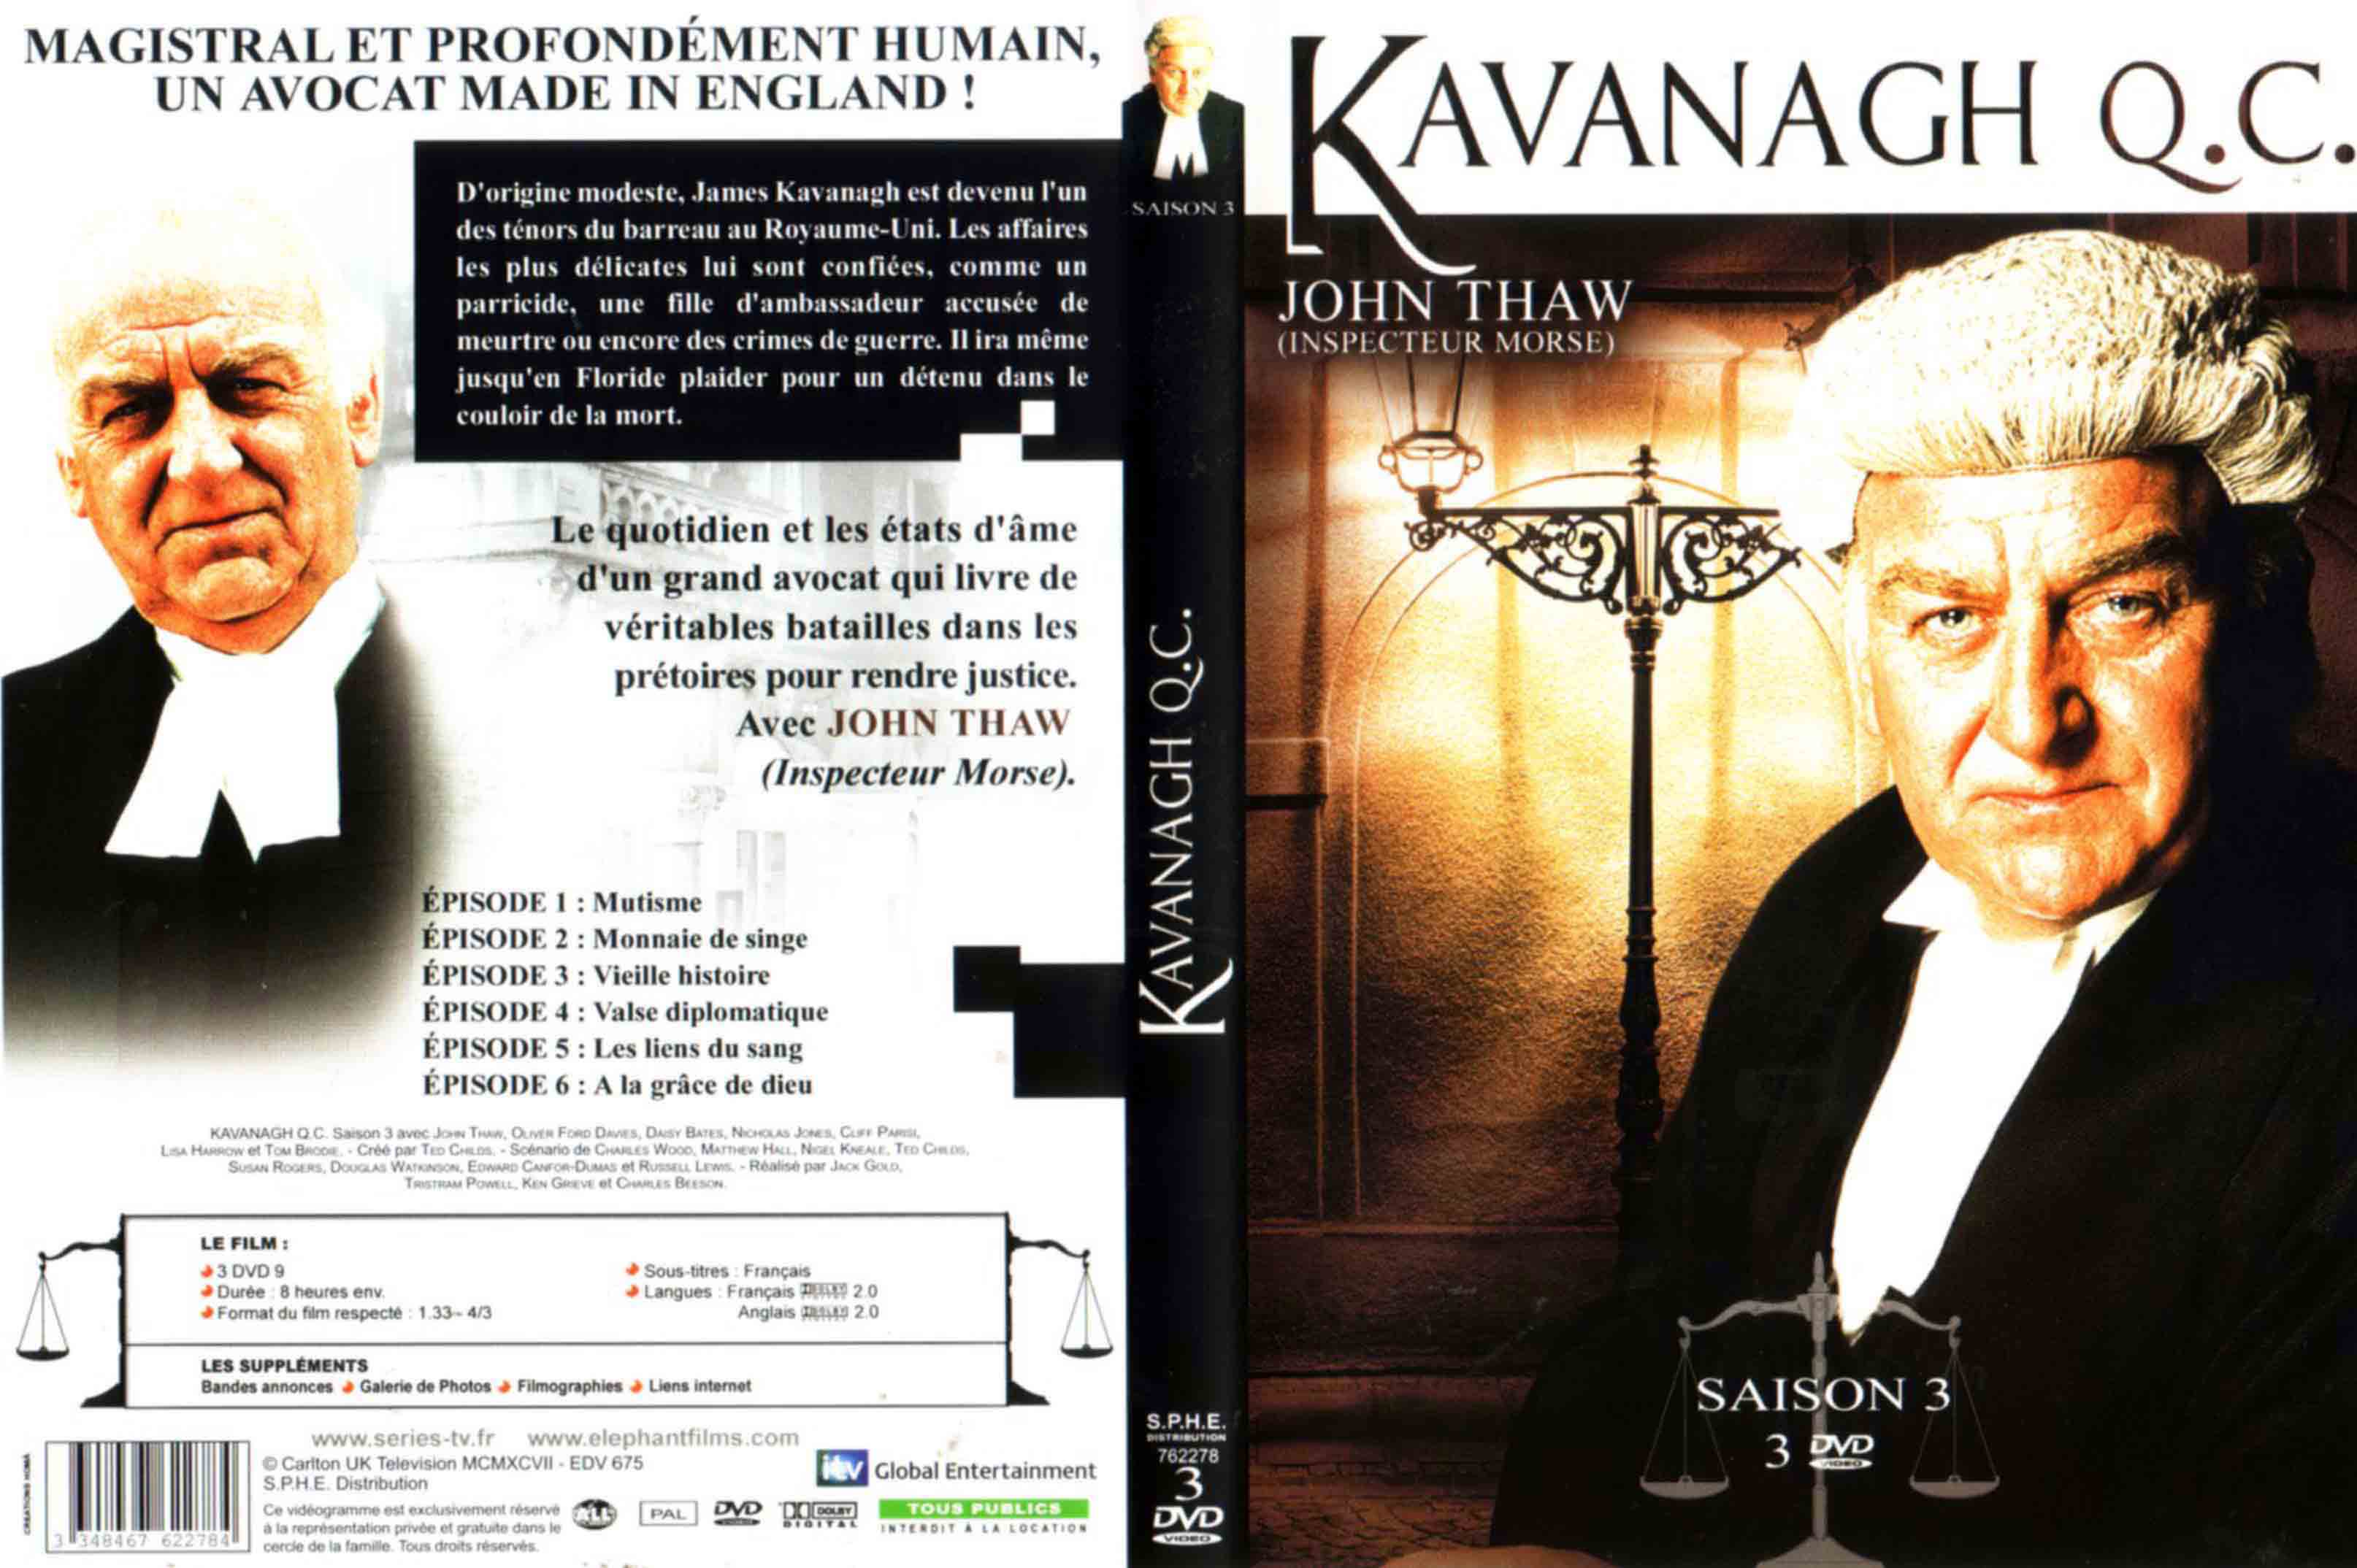 Jaquette DVD kavanagh Q C Inspecteur Morse Saison 3